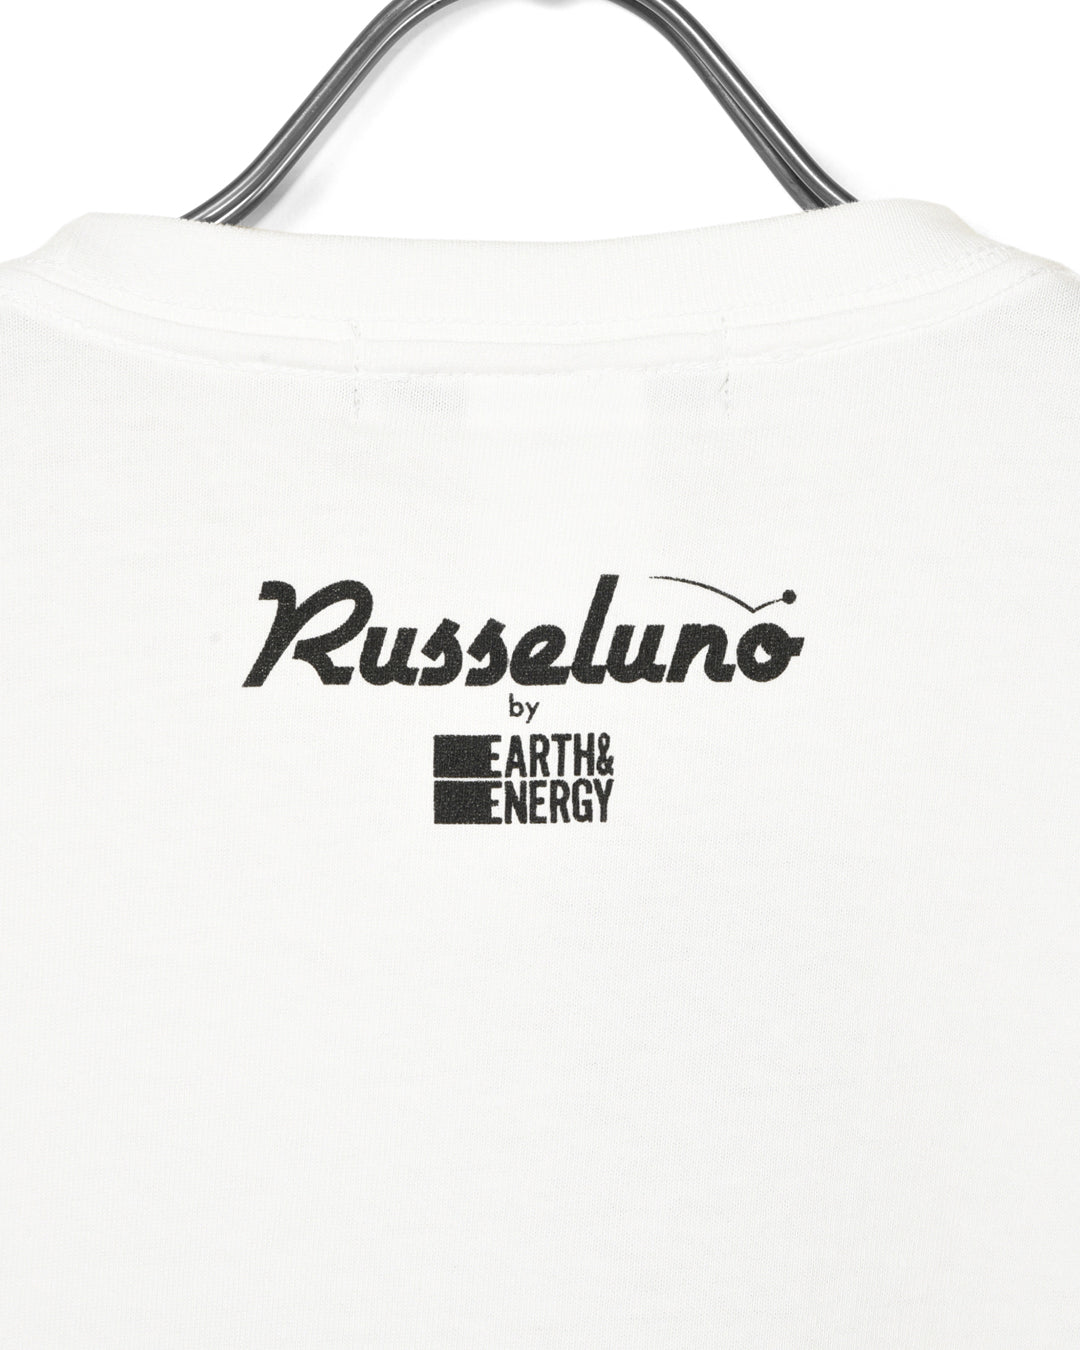 E & E 티셔츠의 Russeluno